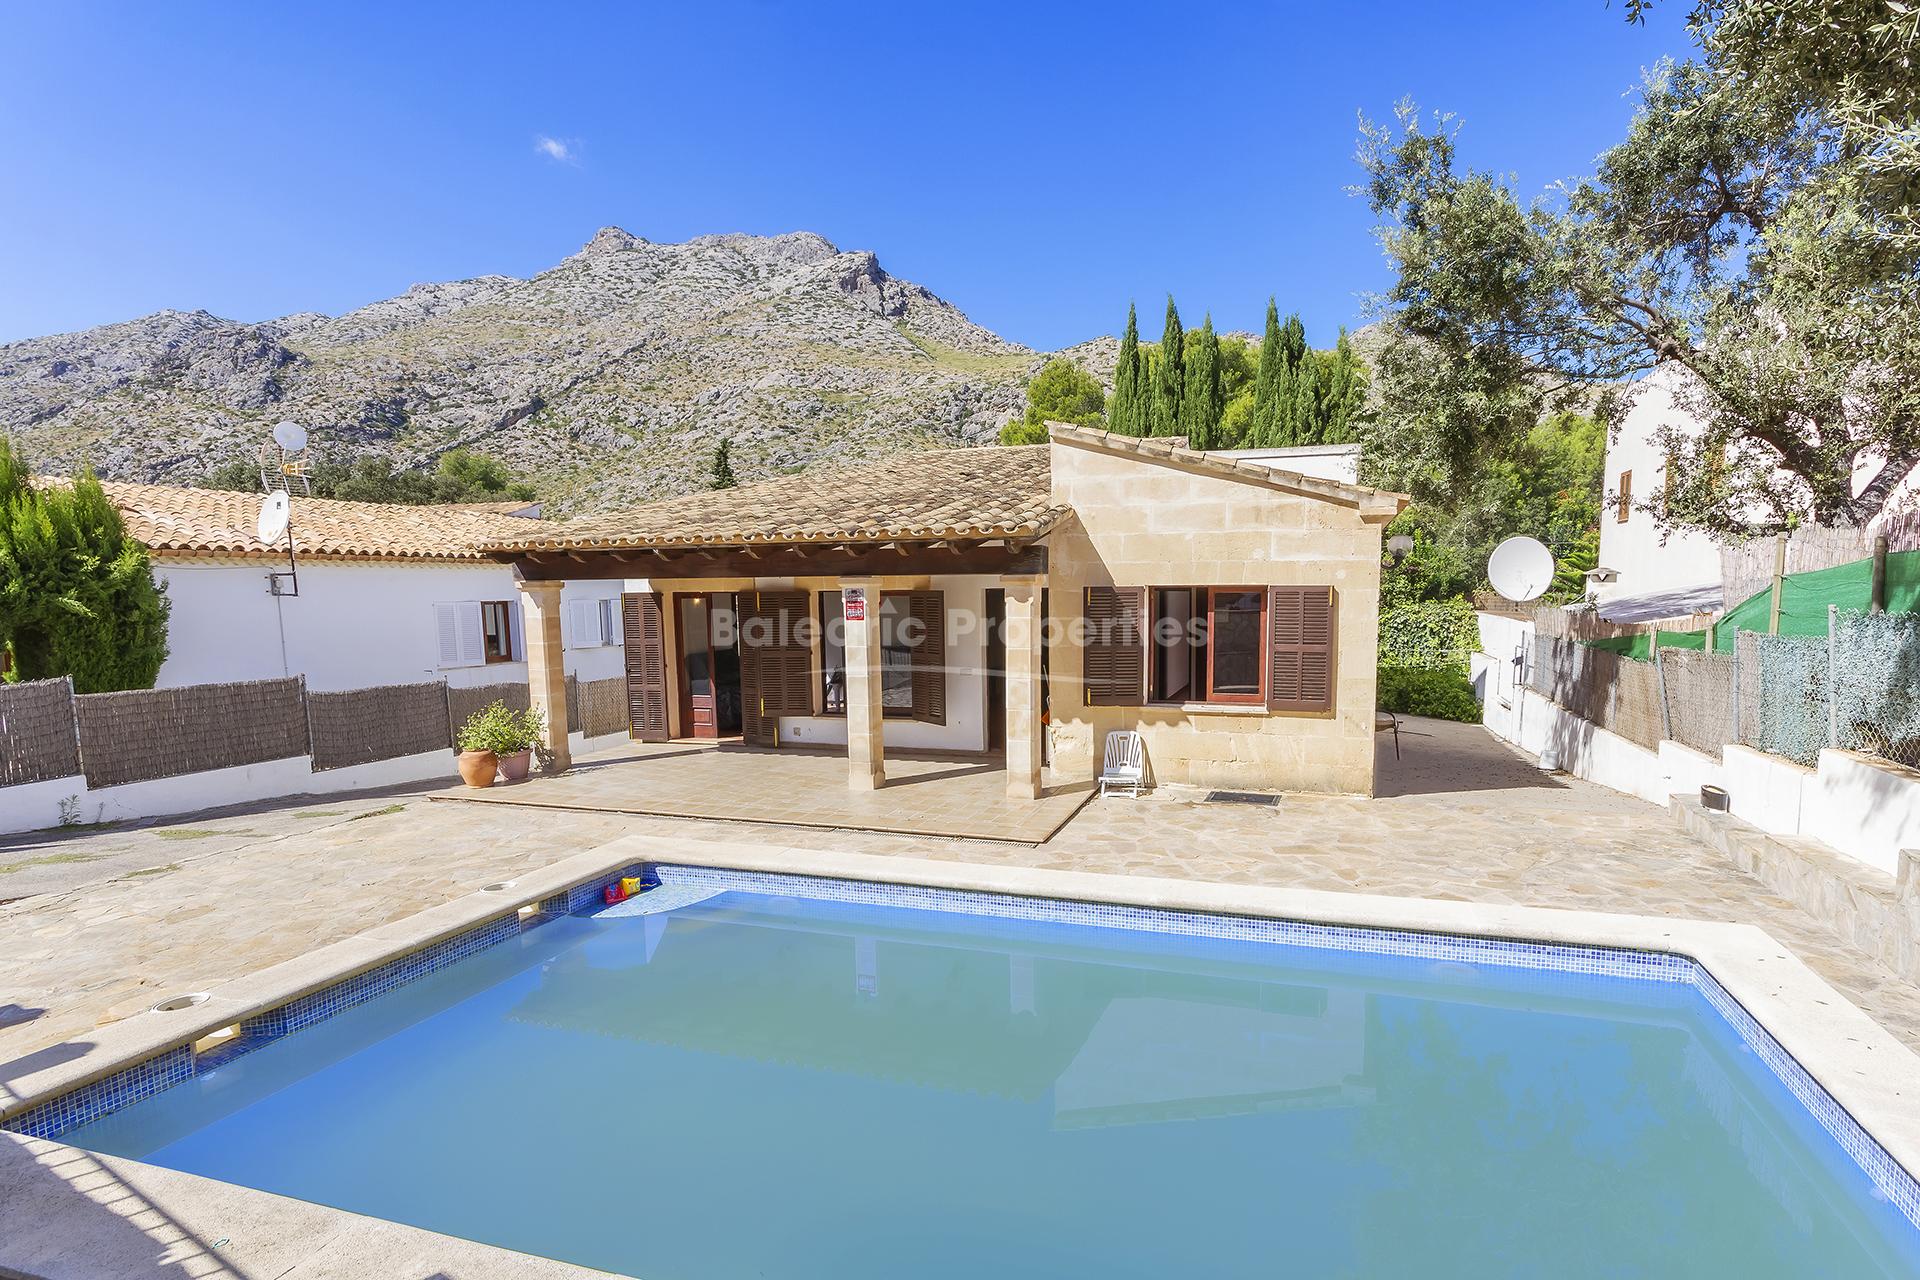 Encantadora villa en venta cerca de la playa en Cala San Vicente, Mallorca